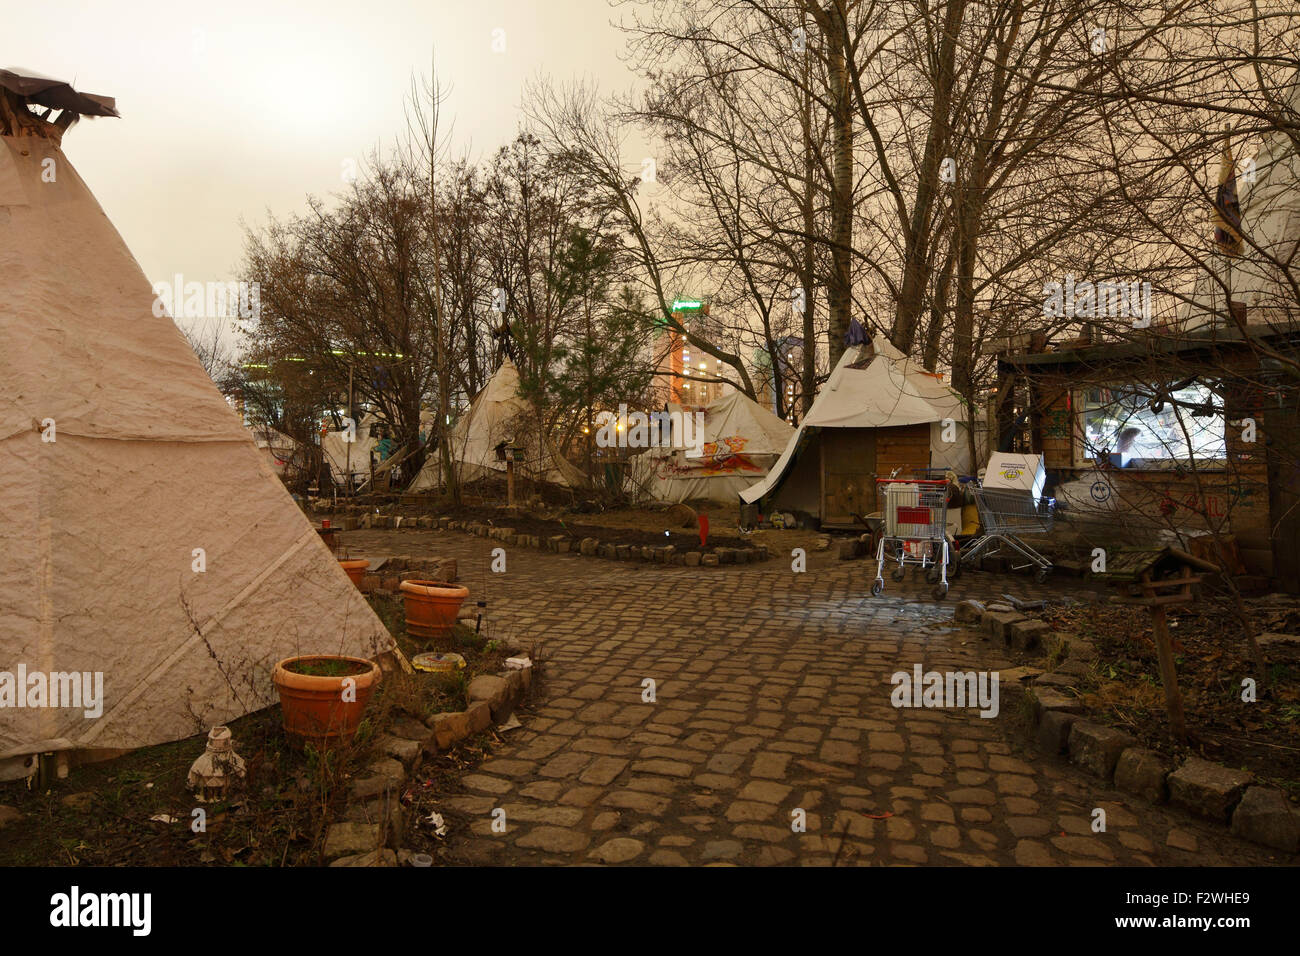 10.02.2015, Berlin, Berlin, Deutschland - Zelt Tipi Dorf landen an der Spree in Berlin-Mitte, im Hintergrund die Ruine Stockfoto